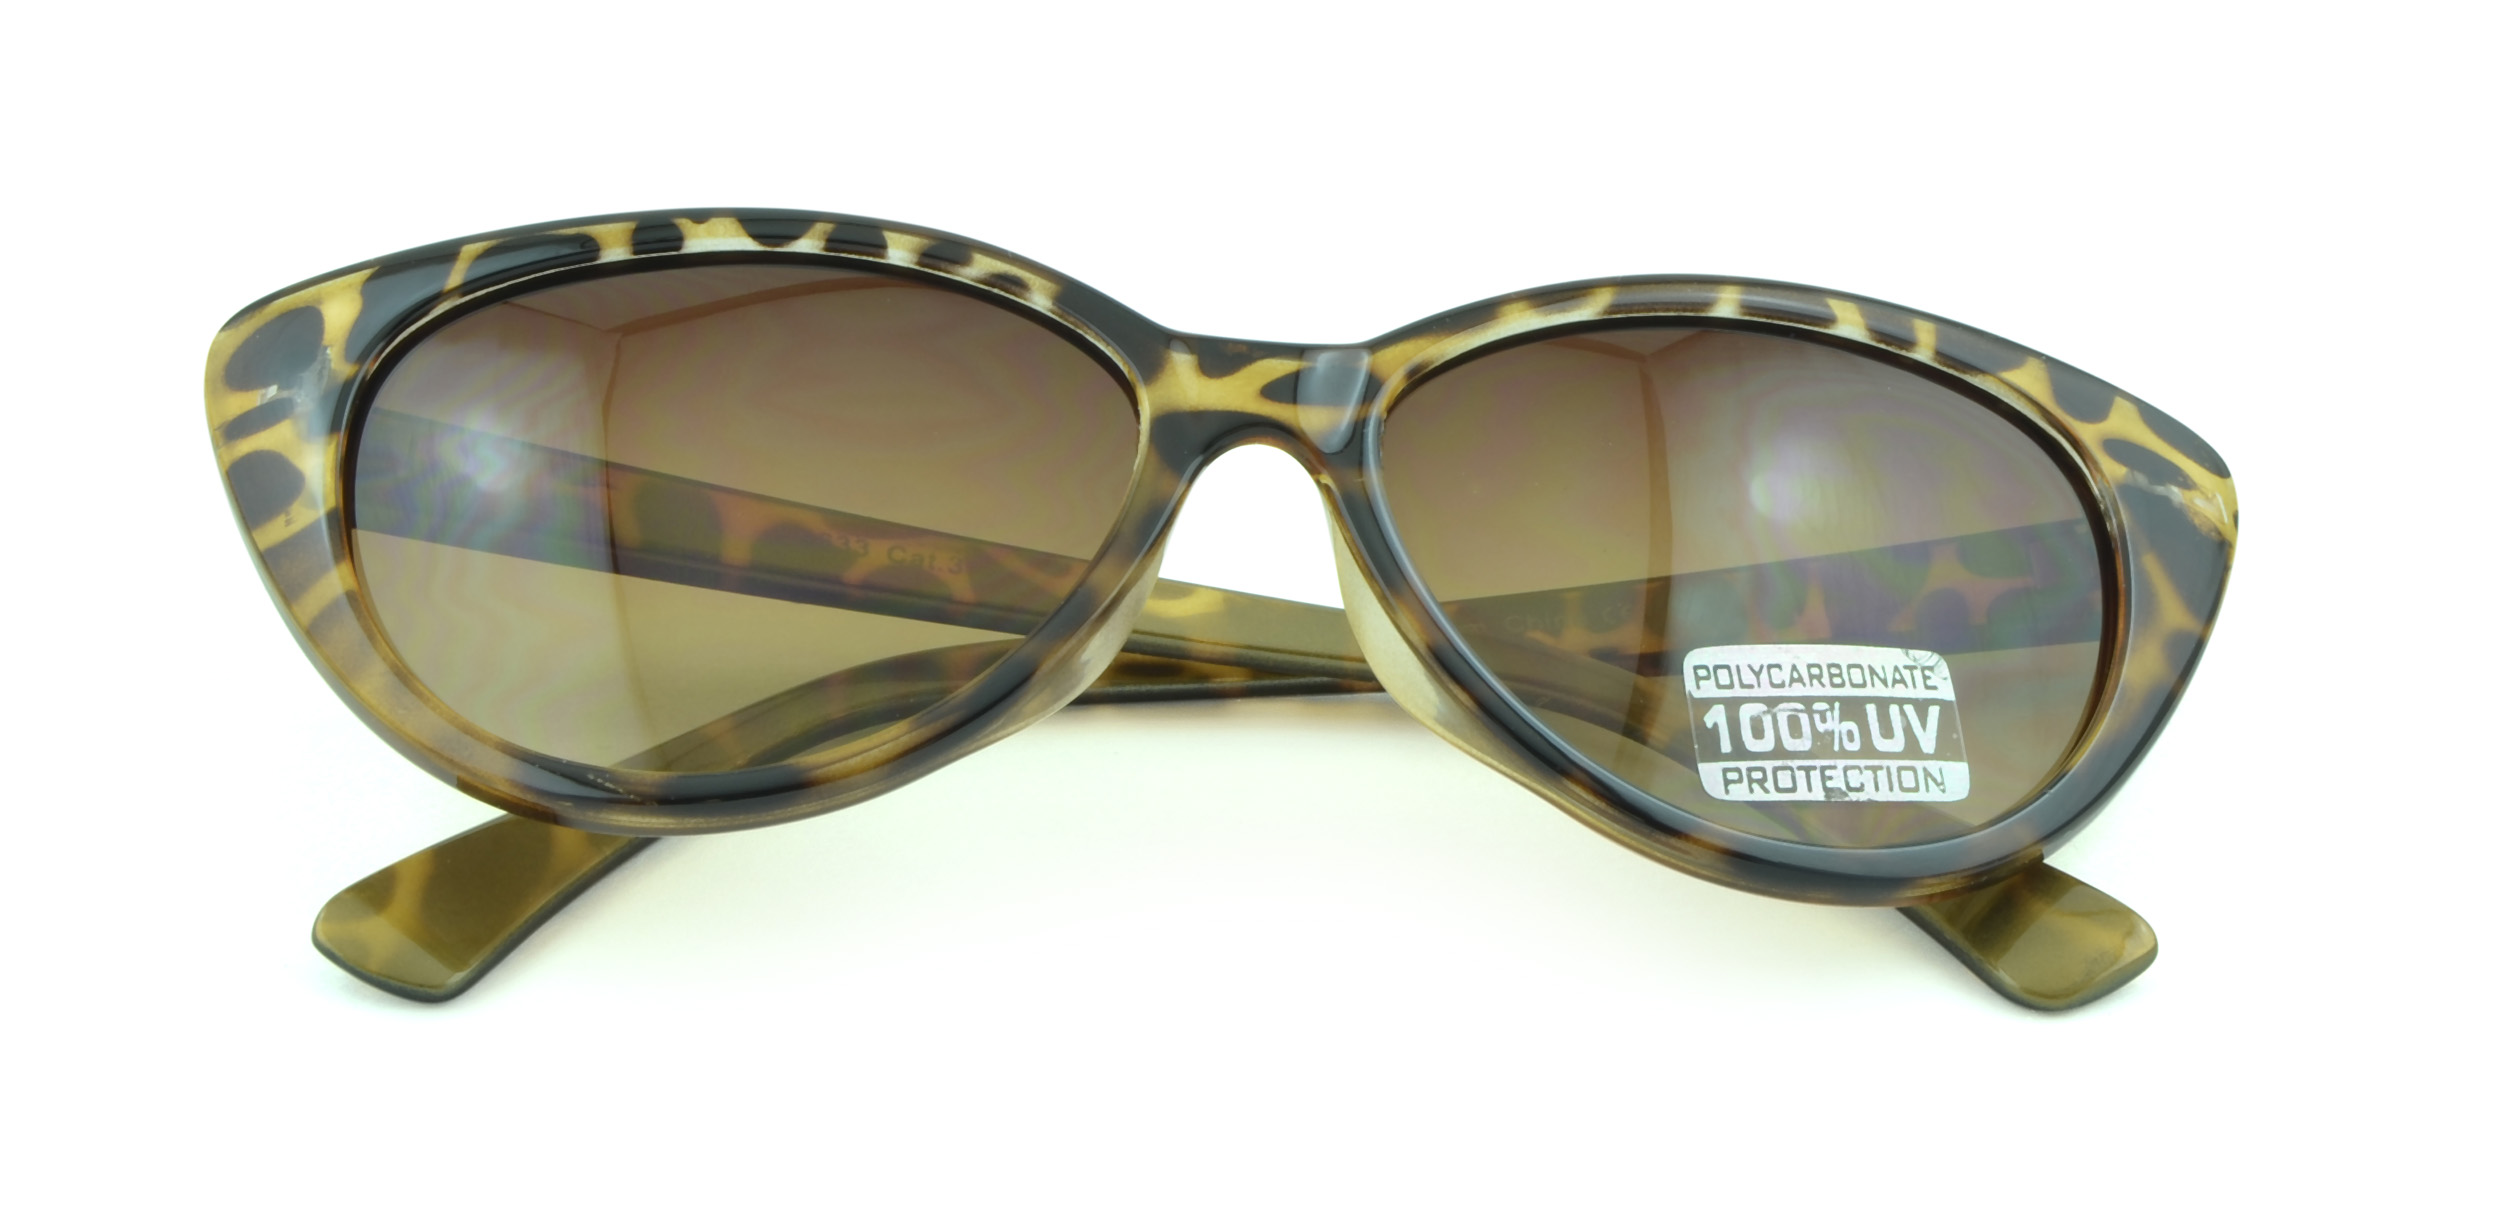 Belle Donne - Women's Fashion Kitten Retro Cat Eye Sunglasses - Tortoise Gold